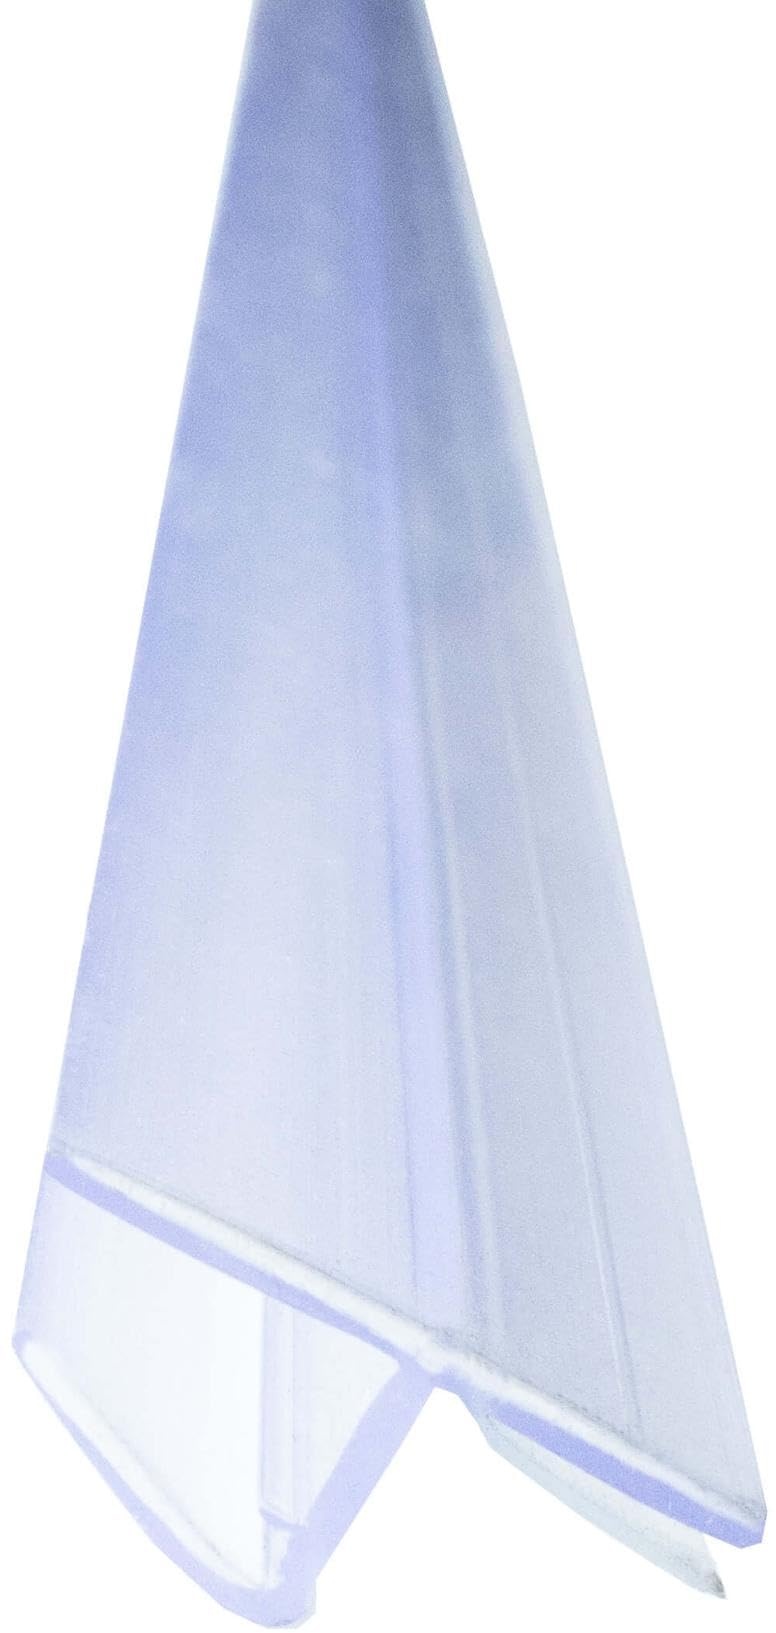 Duschdichtung Anschlagdichtung 180 Grad Transparent für 6mm Glasstärke einseitige Duschtür Öffnung, Duschlippe aus PVC, Abdichtung Dusche